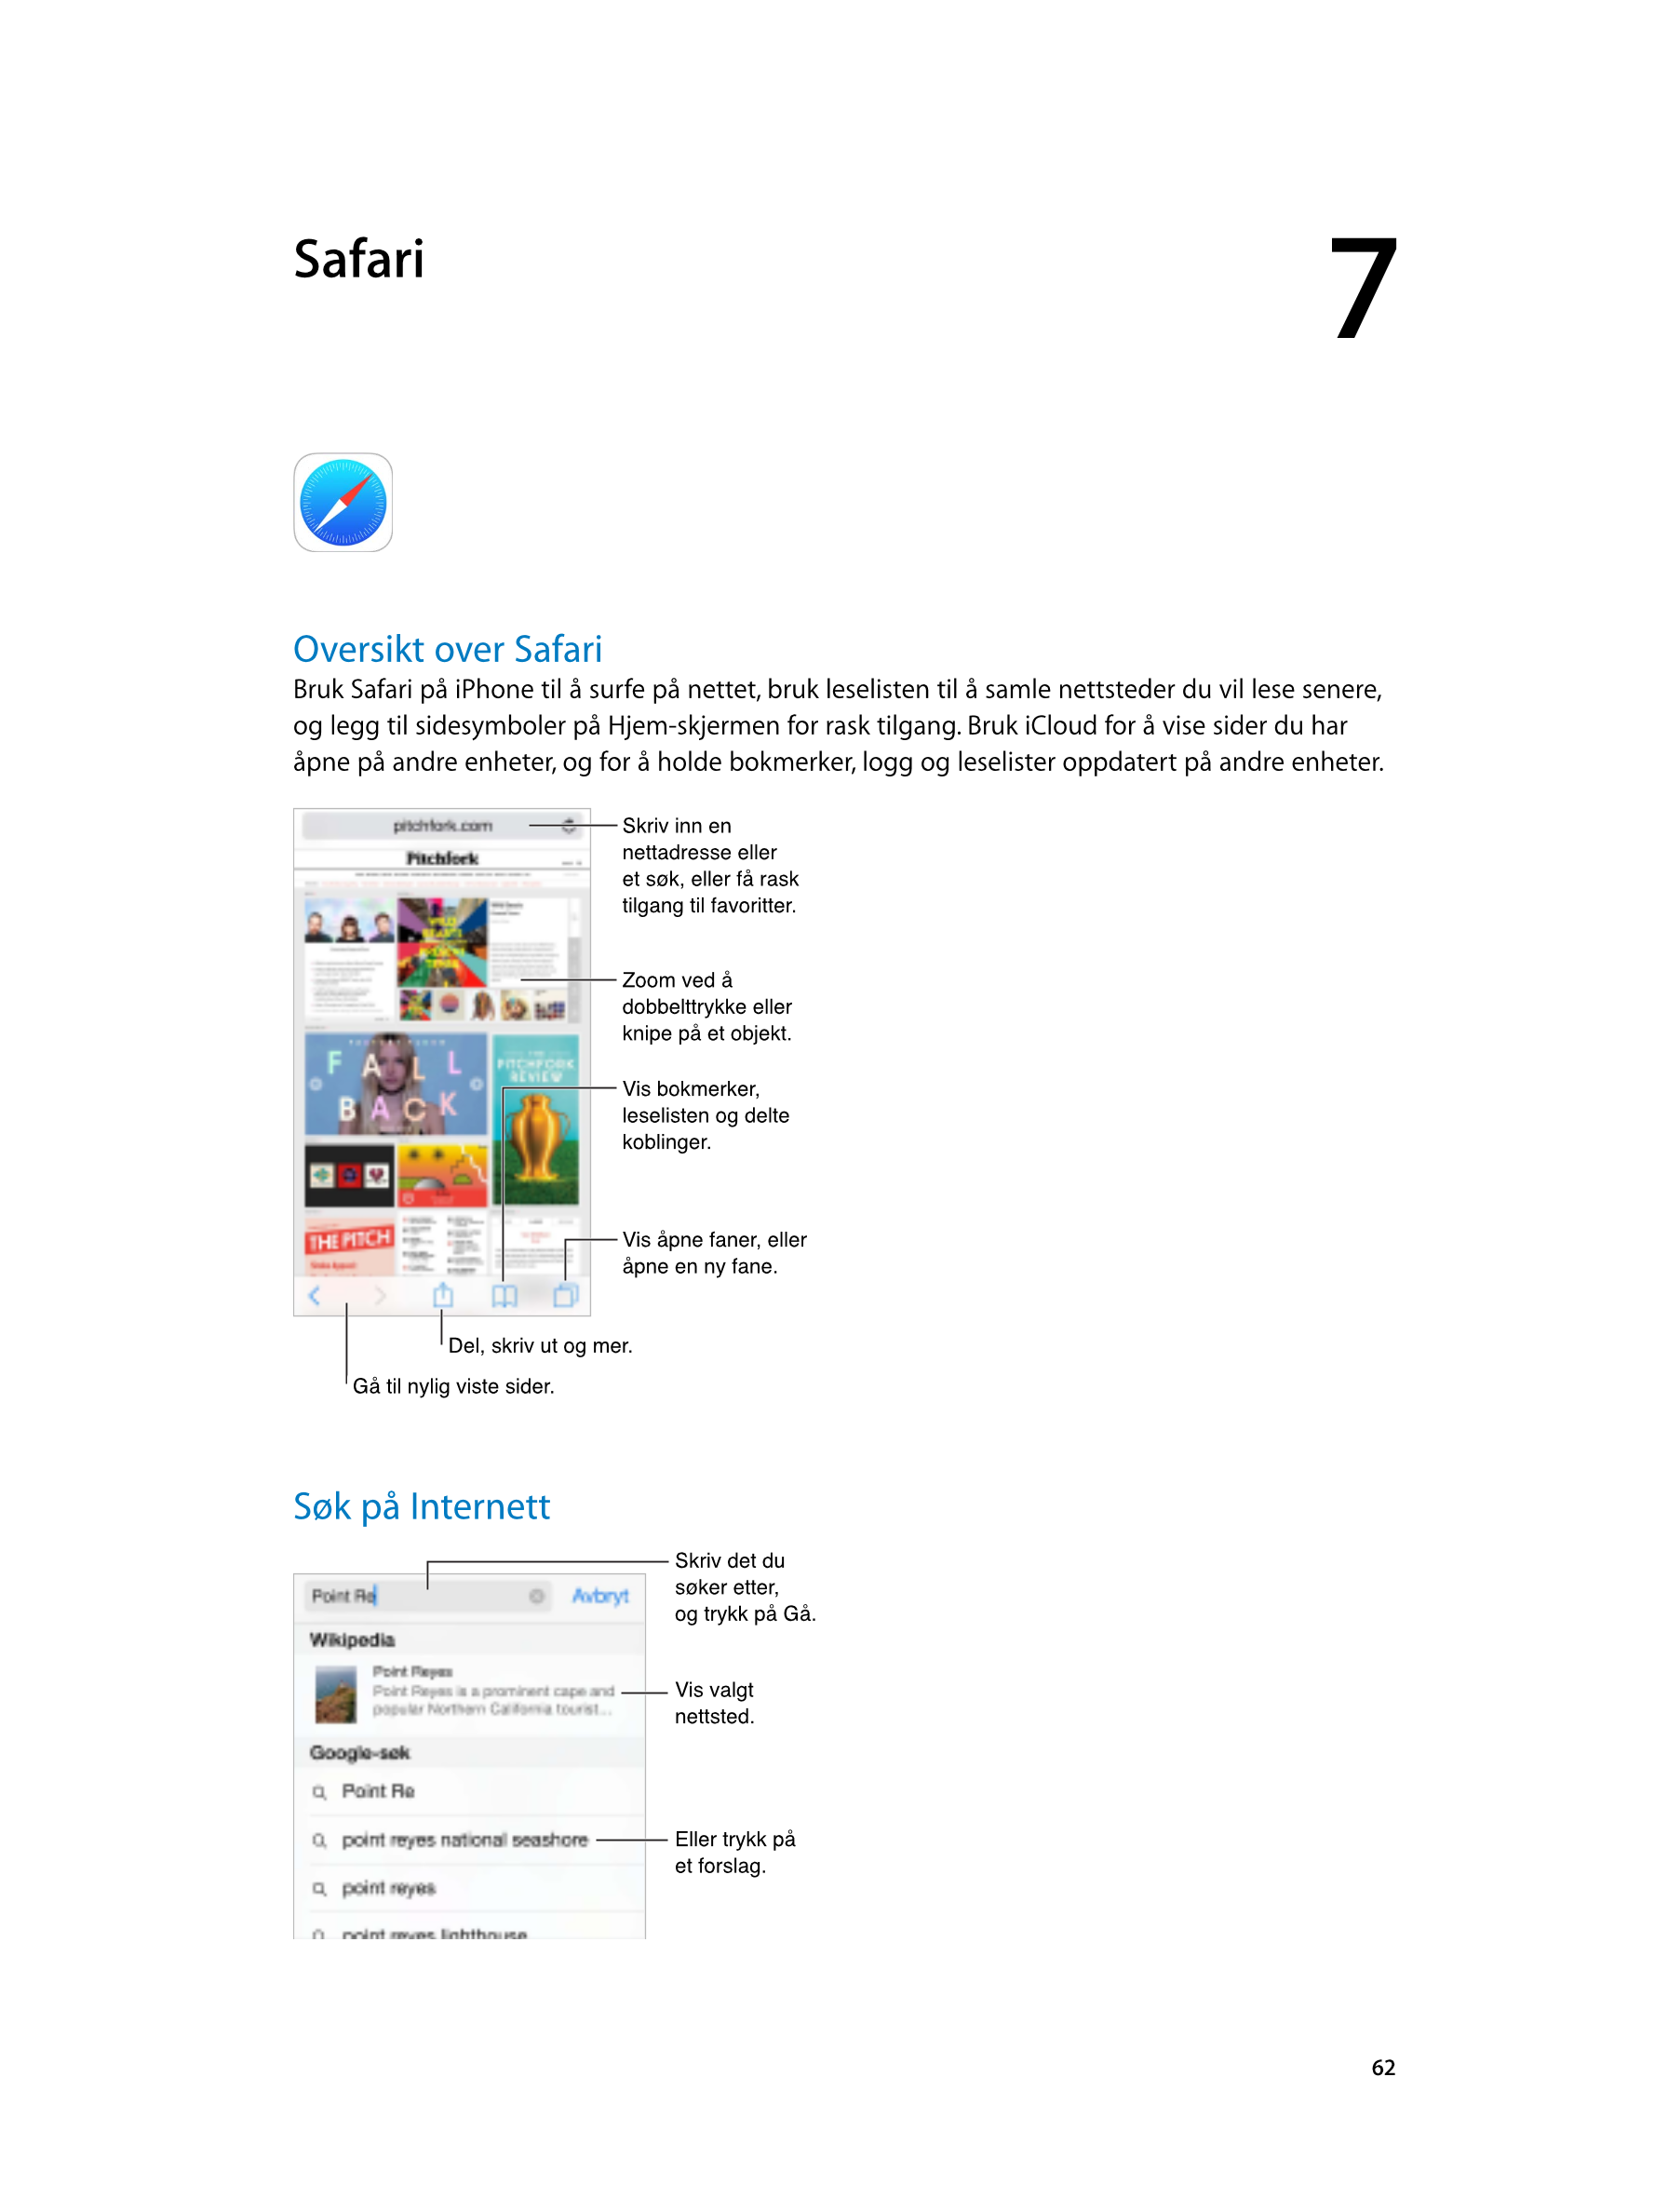   Safari 7
Oversikt over Safari
Bruk Safari på iPhone til å surfe på nettet, bruk leselisten til å samle nettsteder du vil lese 